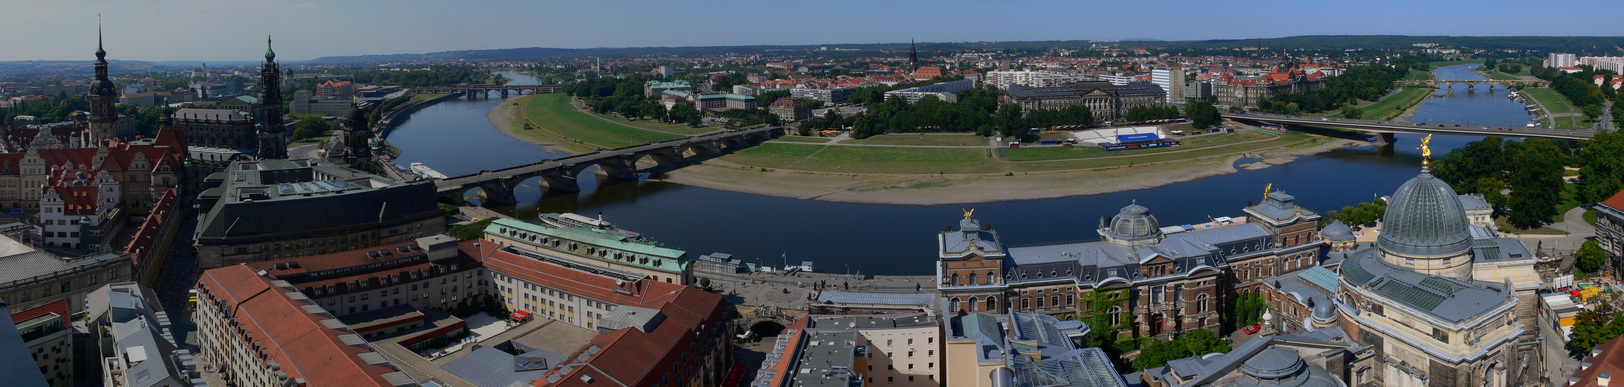 Dresden von der Kuppel der Frauenkirche